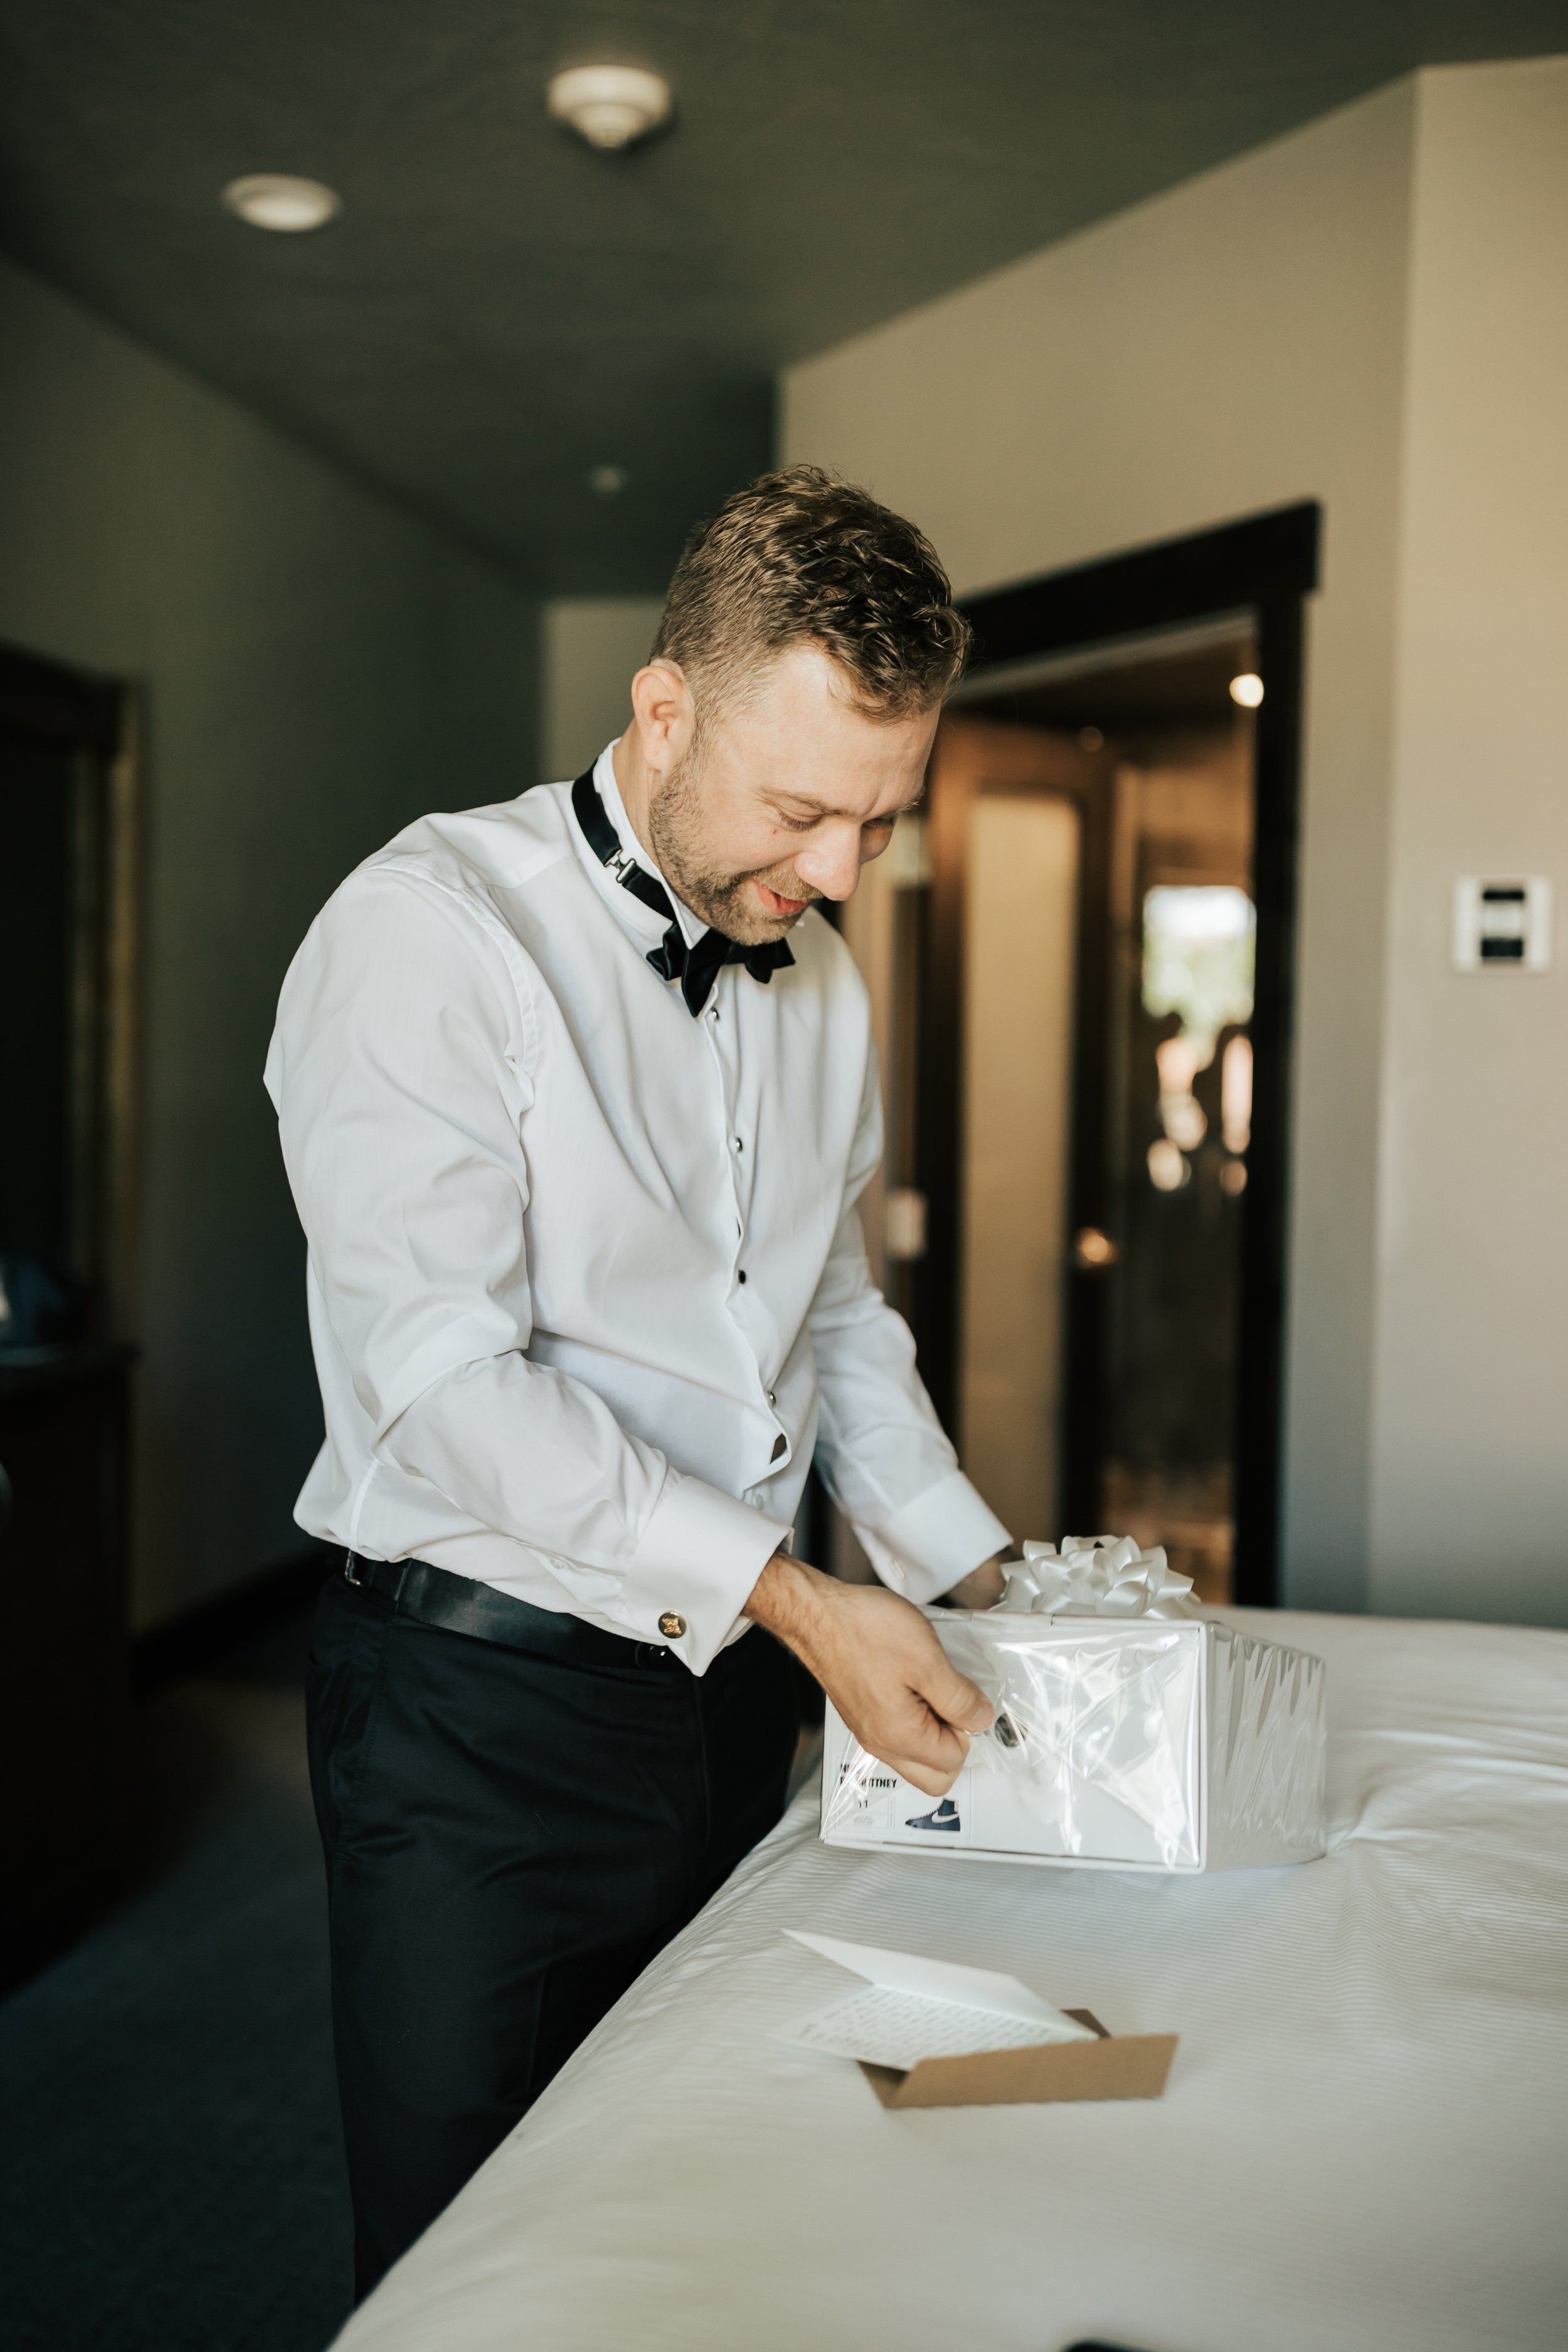  Getting ready photos. Groom gets ready in hotel room before wedding. Groomsman helps groom get ready. #montanawedding #utahwedding #gettingreadyphotos 